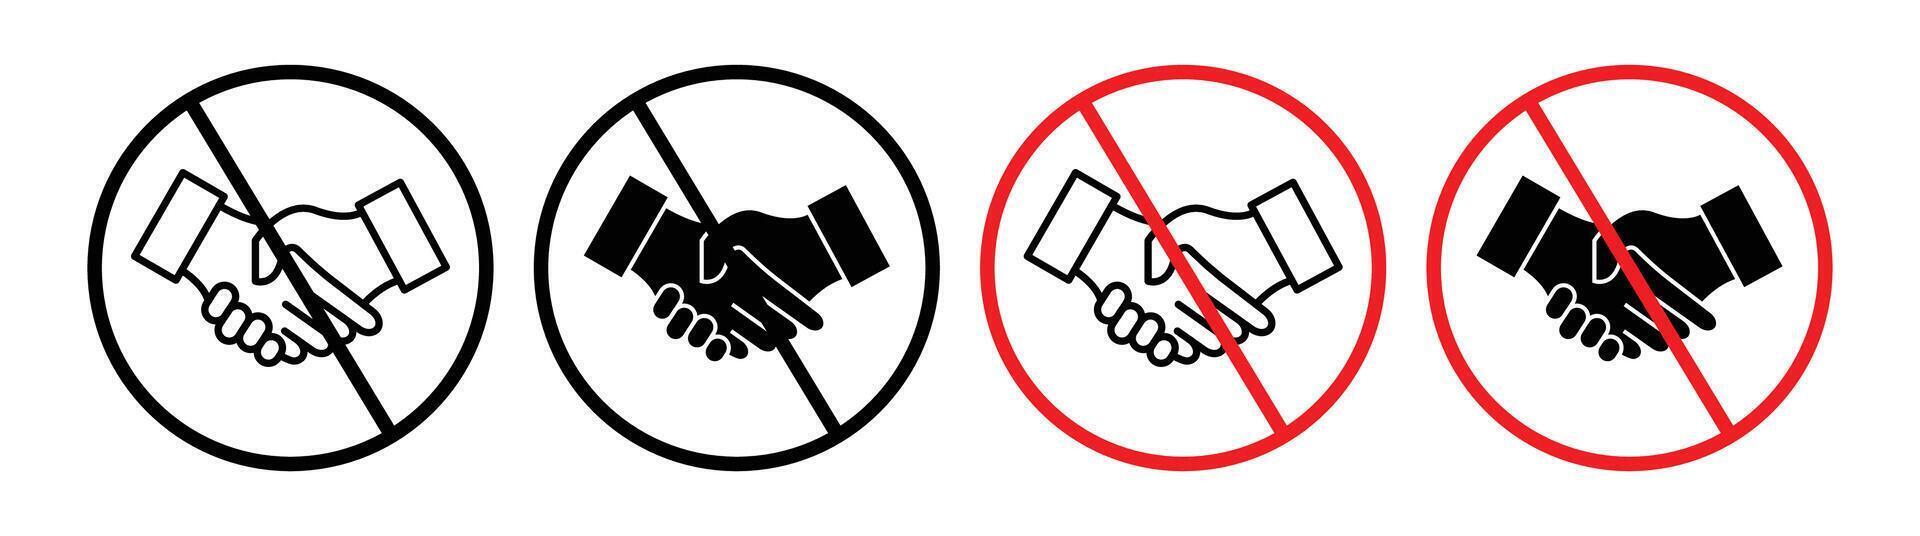 No handshake sign vector